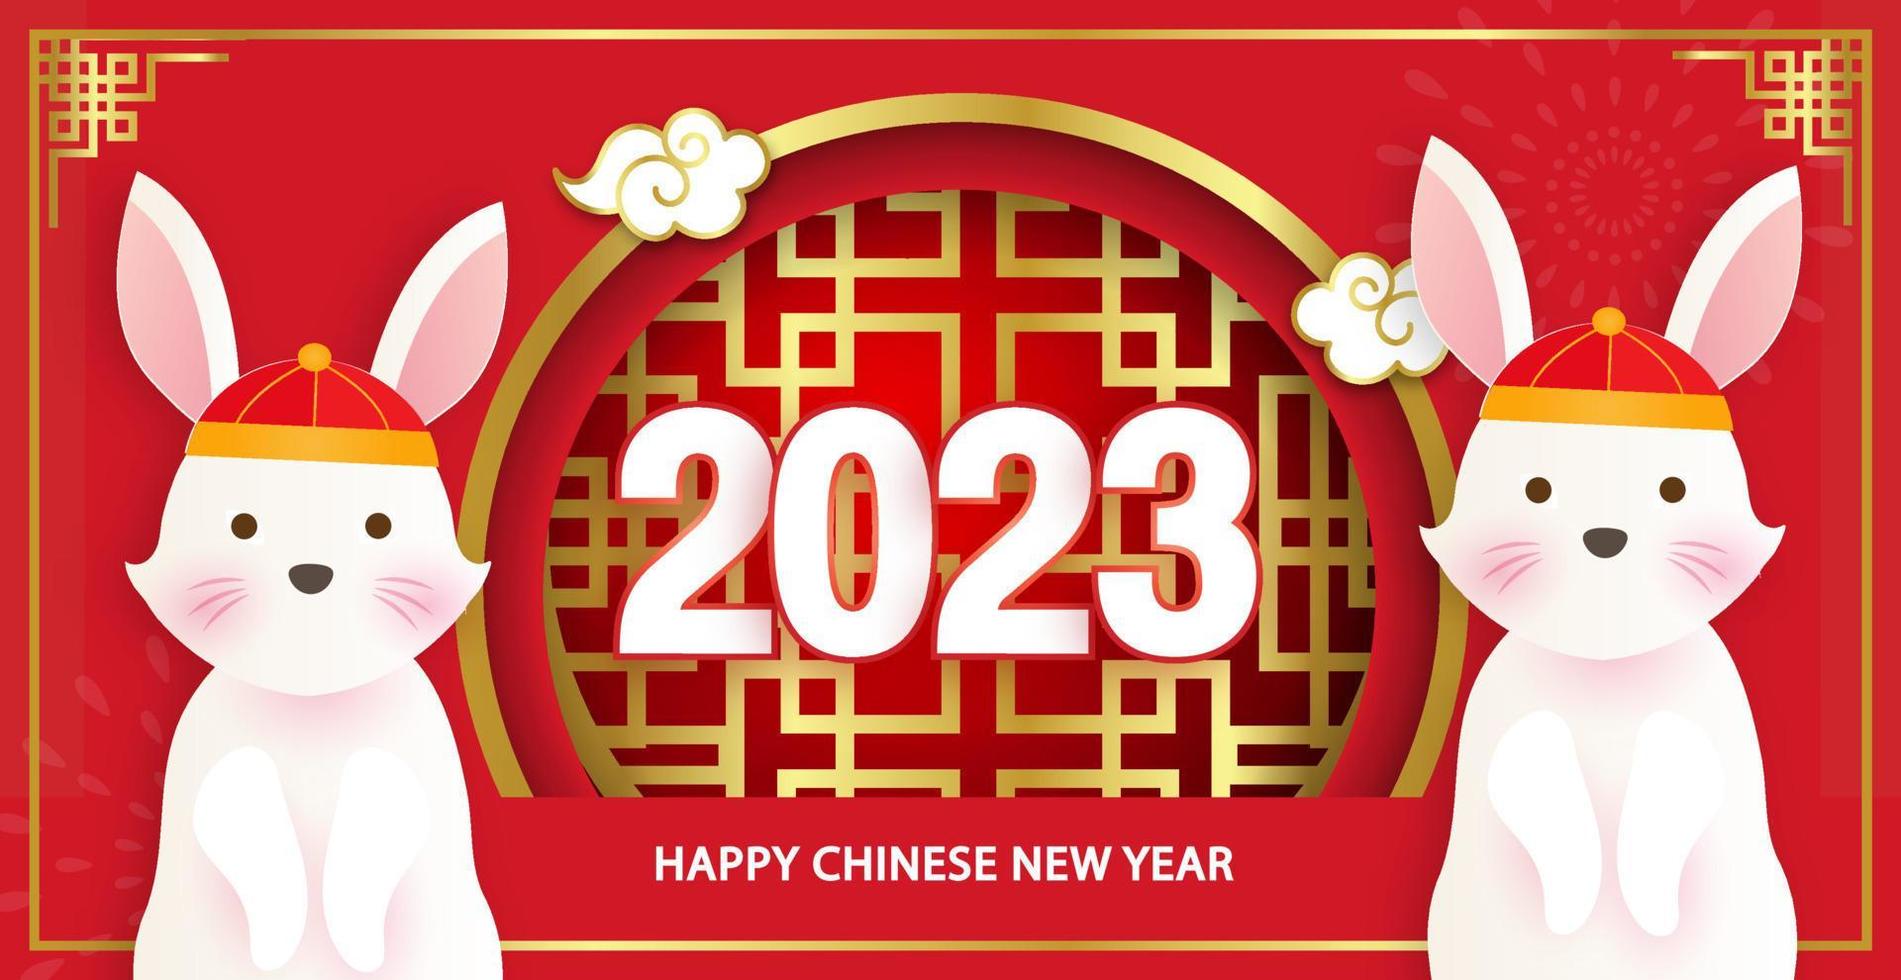 chinesisches neujahr 2023 jahr des kaninchenbanners im papierschnittstil. vektor